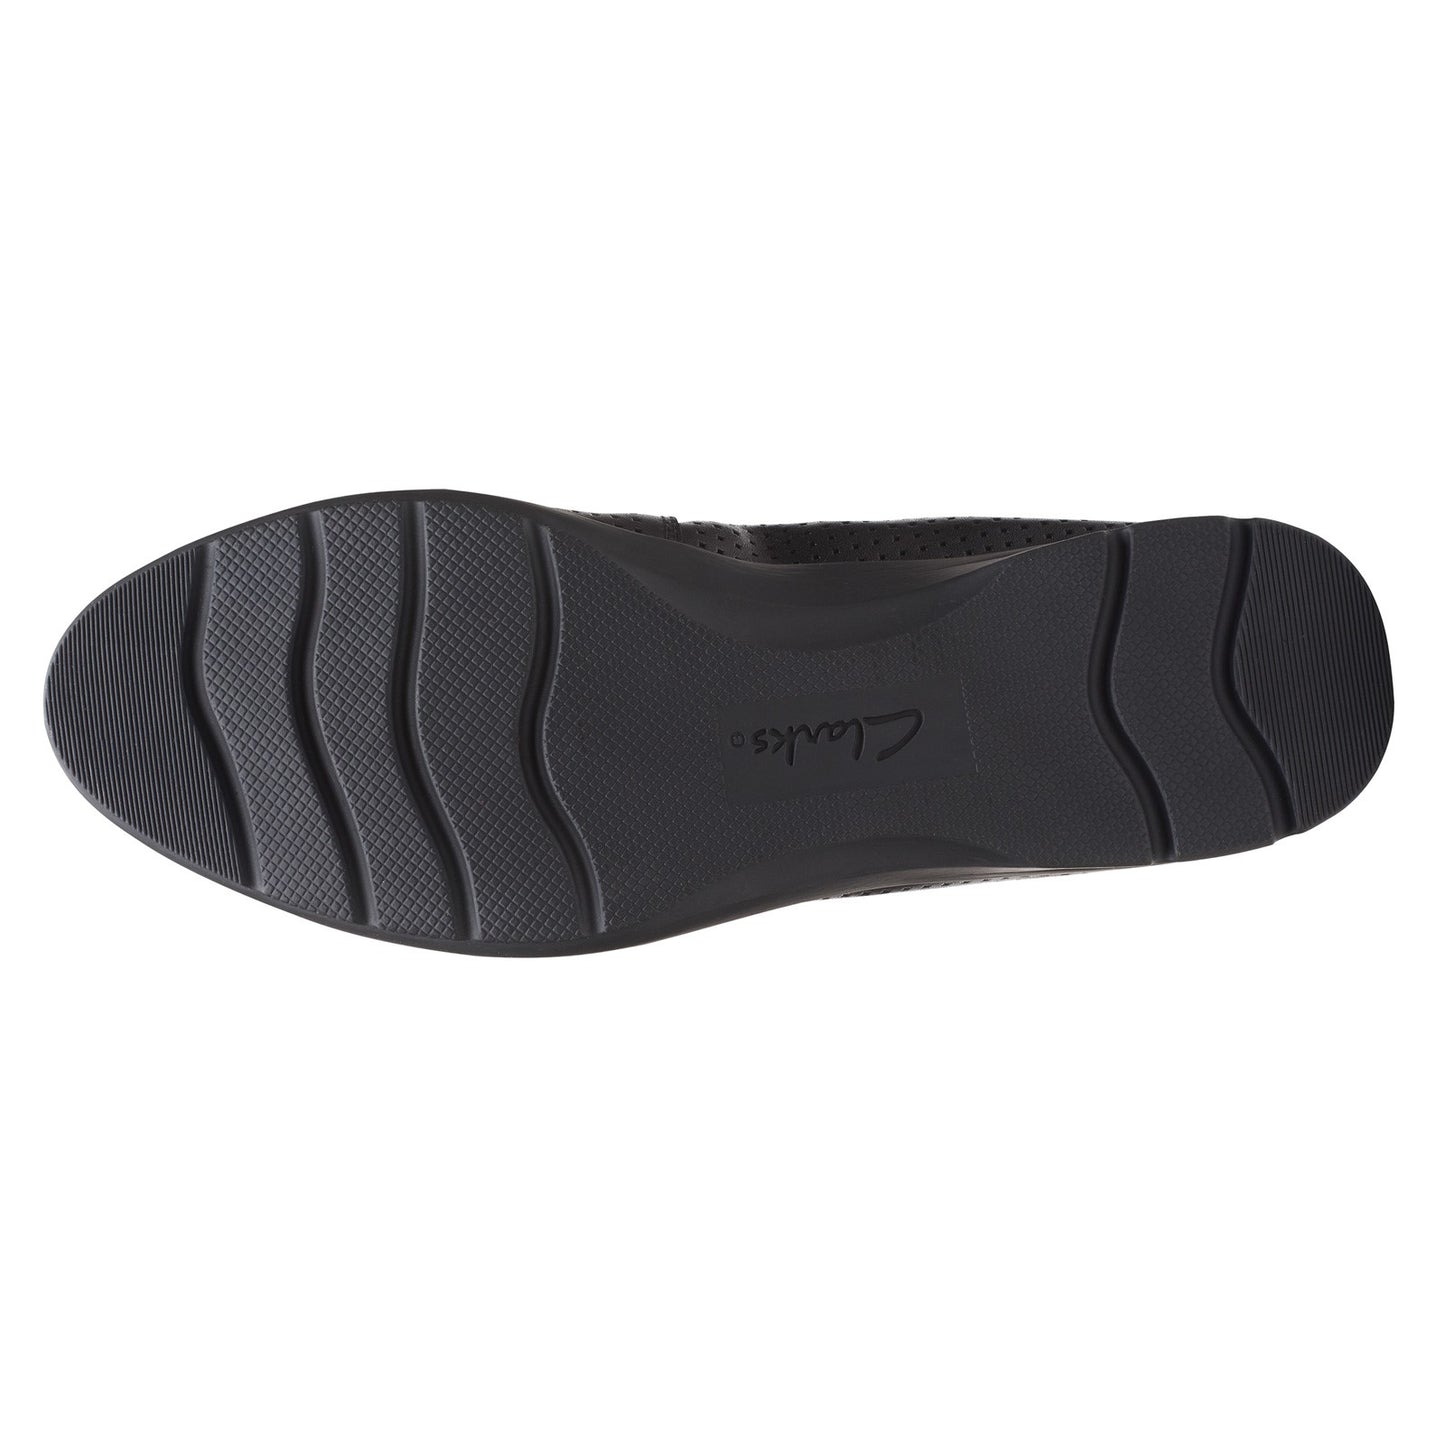 Peltz Shoes  Women's Clarks Jenette Ease Flat Black Leather 26165152